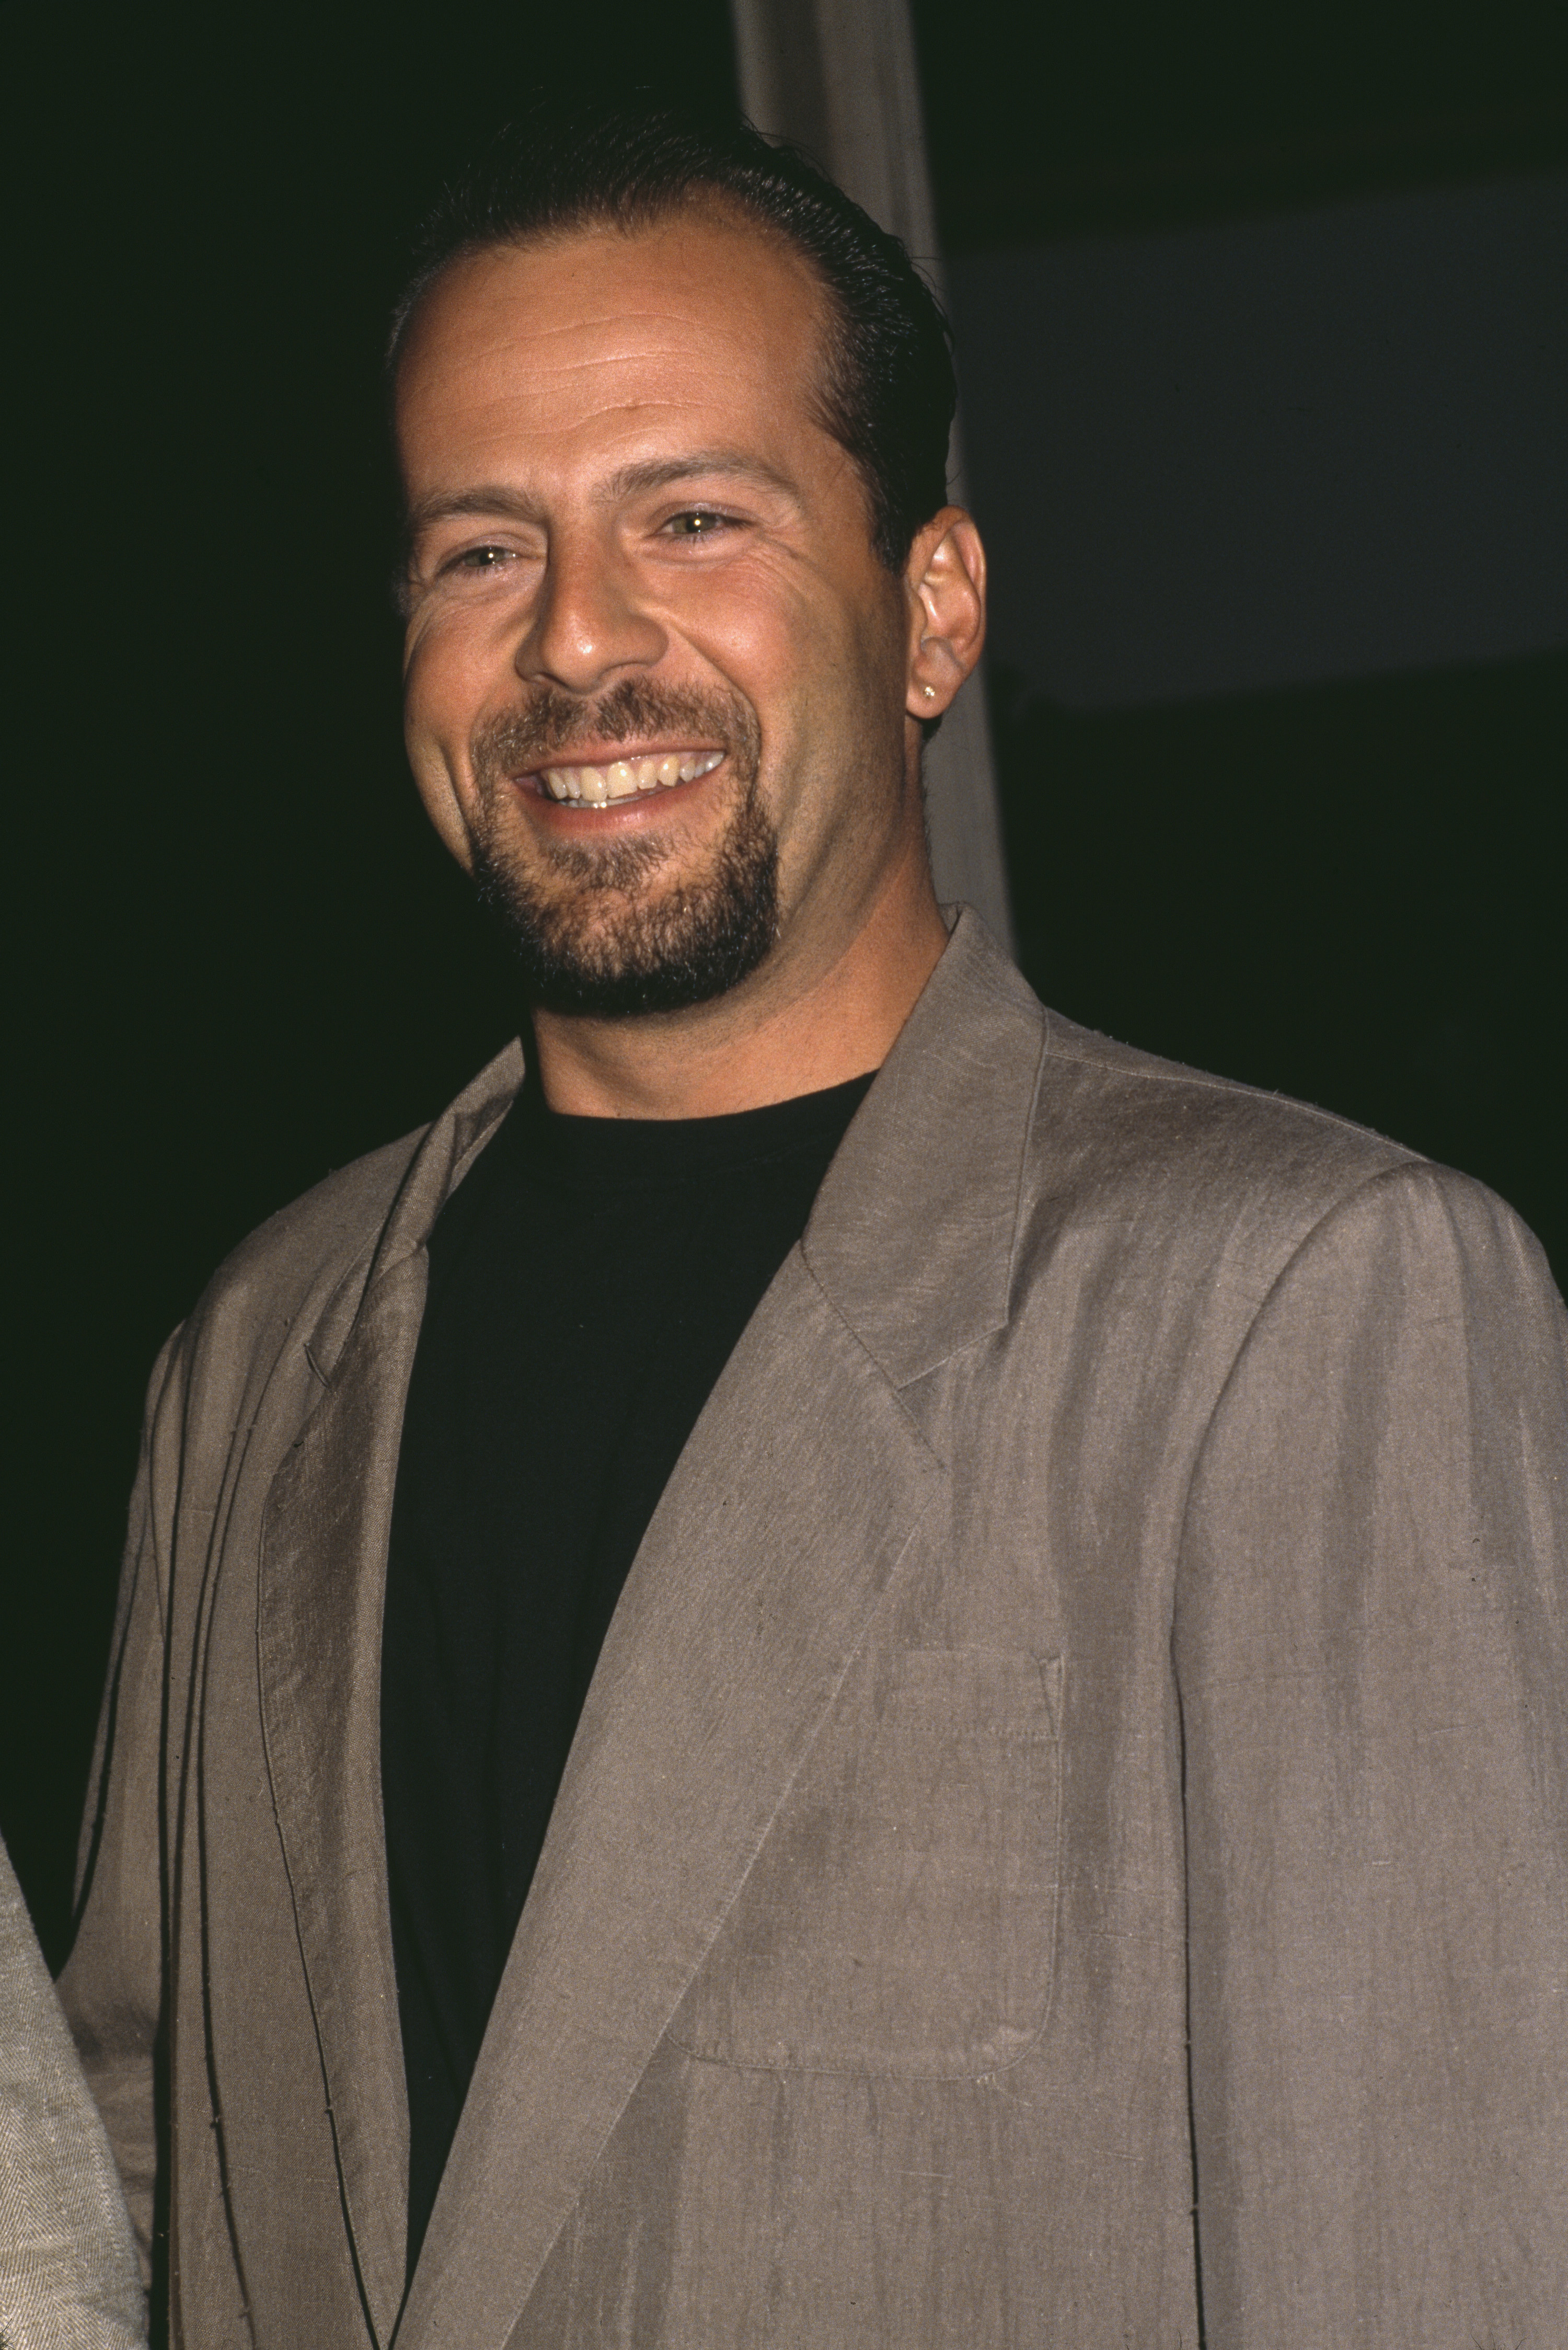 Bruce Willis in 1989